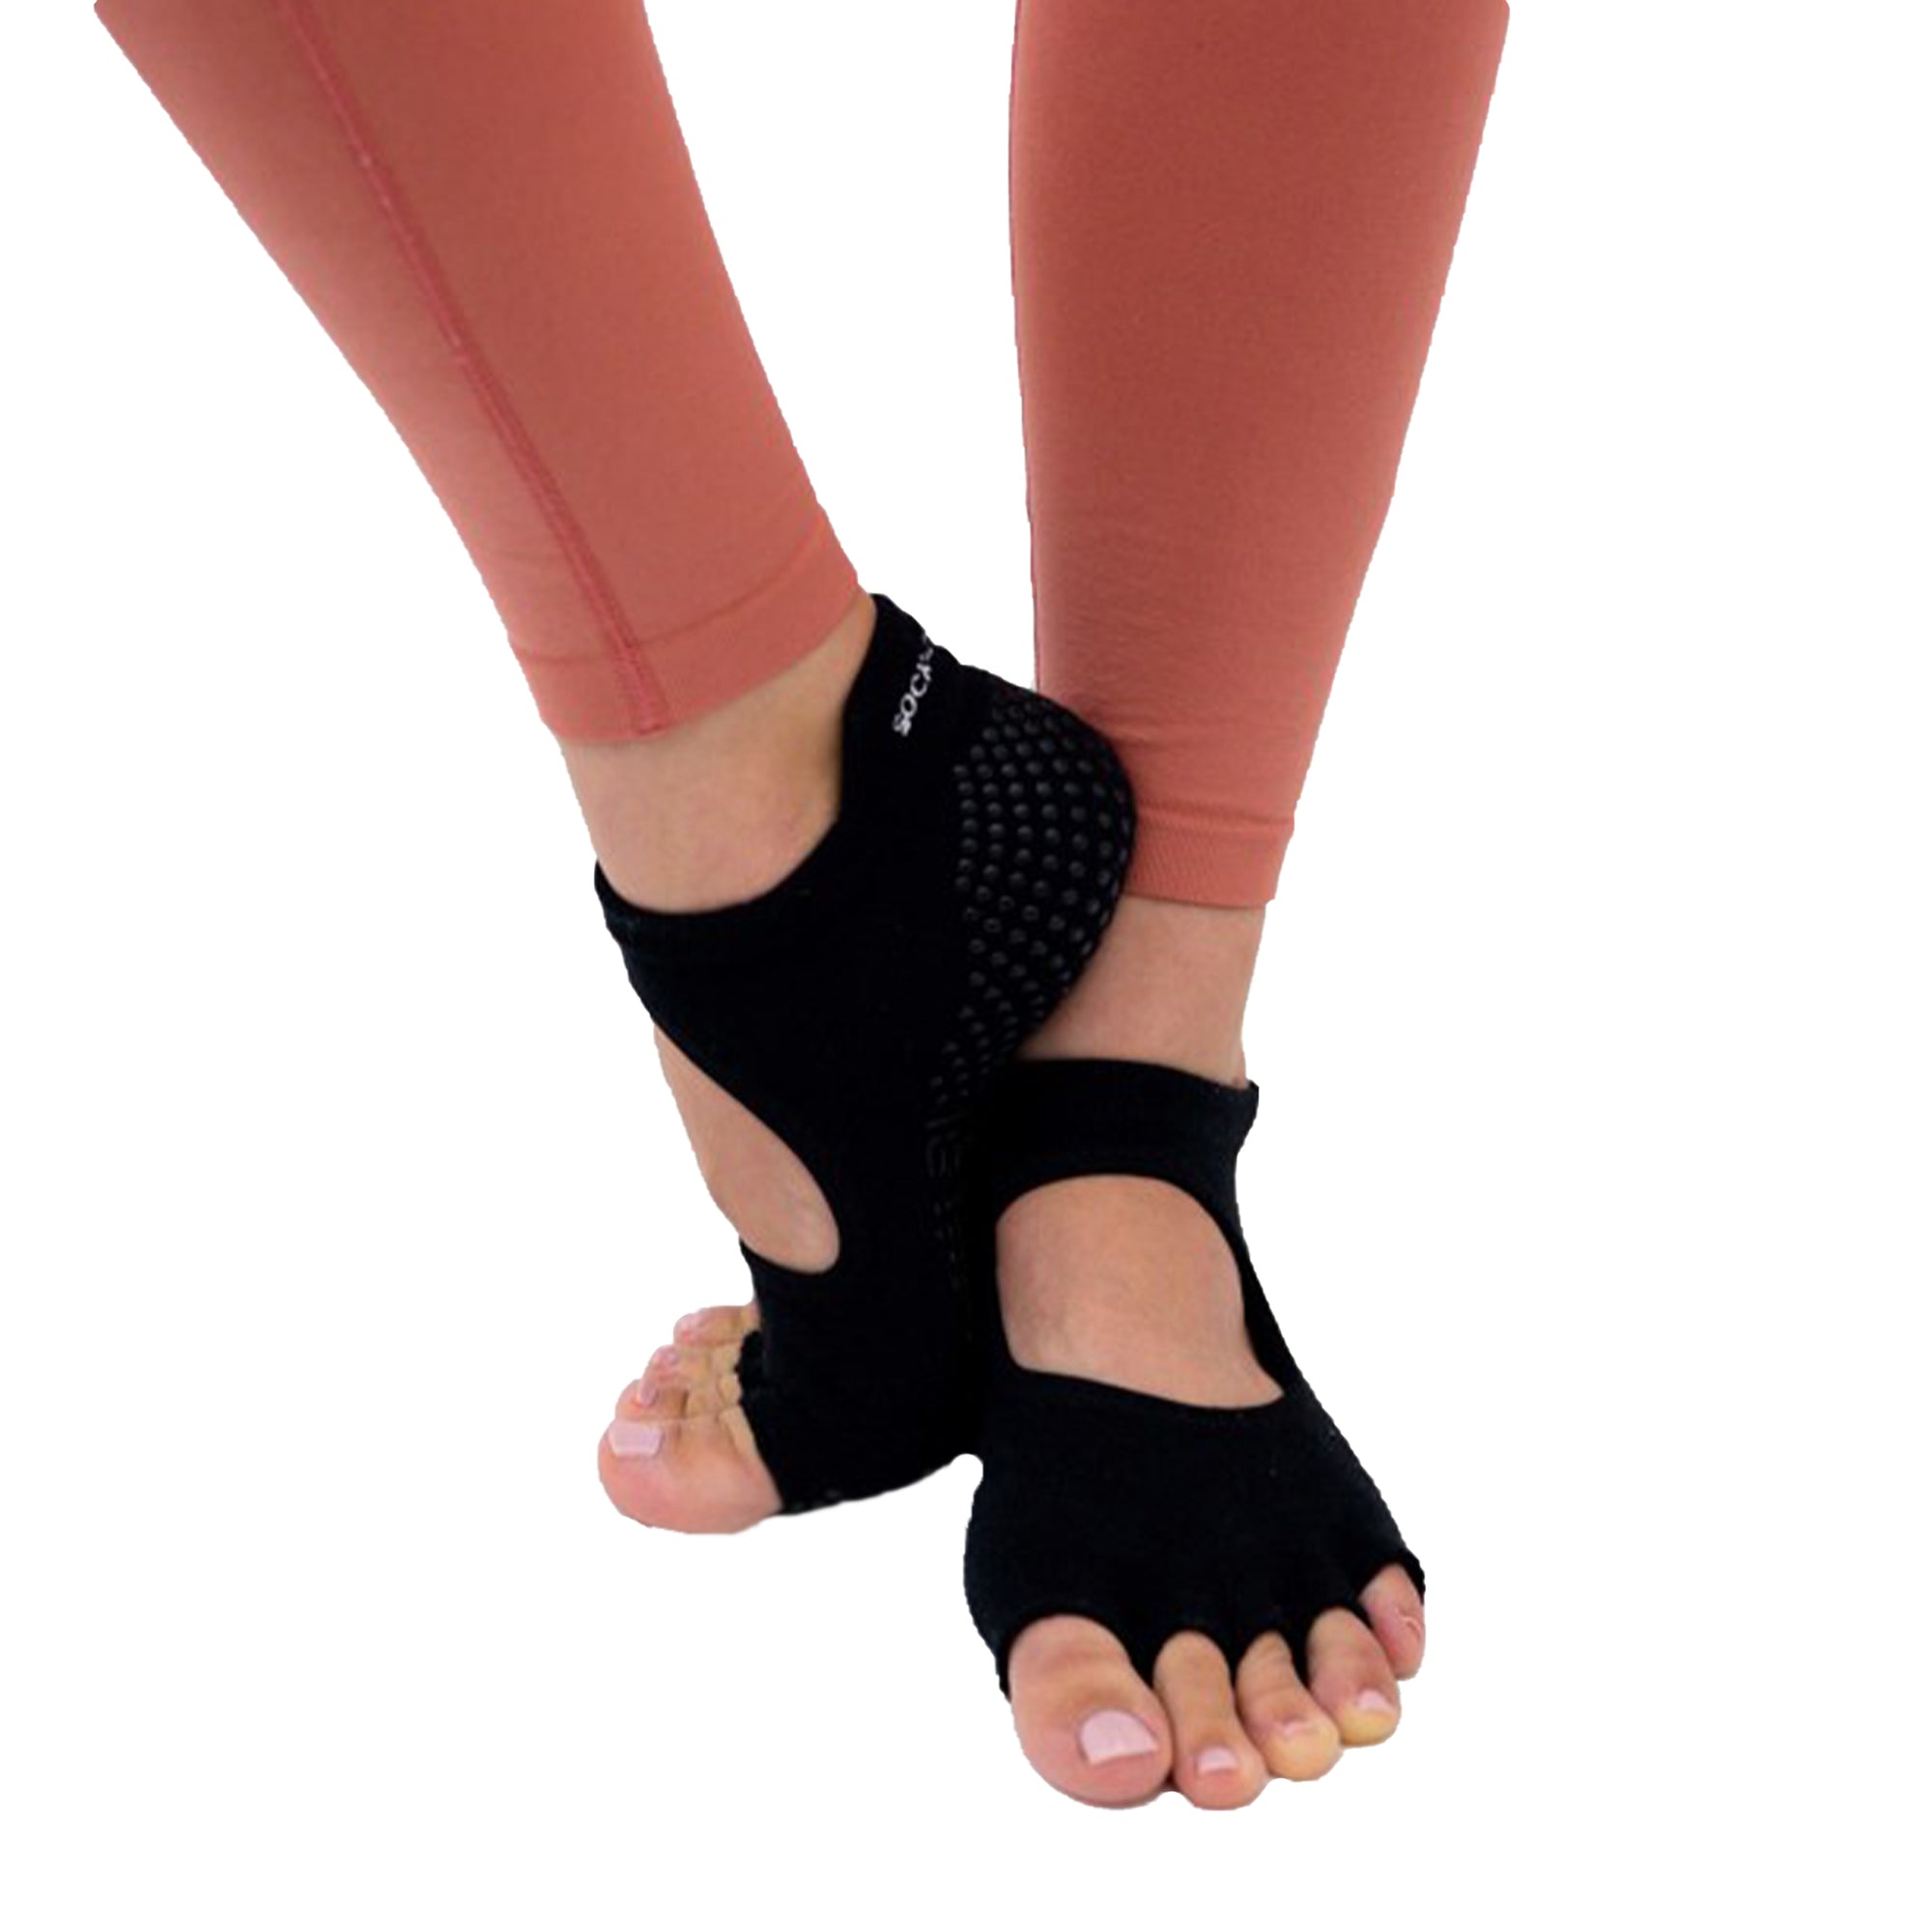  Grip Socks For Pilates, Hospital, Barre, Non Slip Yoga Socks  For Women & Men, Ankle Cut, Cushioned, Anti Skid, Home Slipper Socks,  Black, Small-Medium